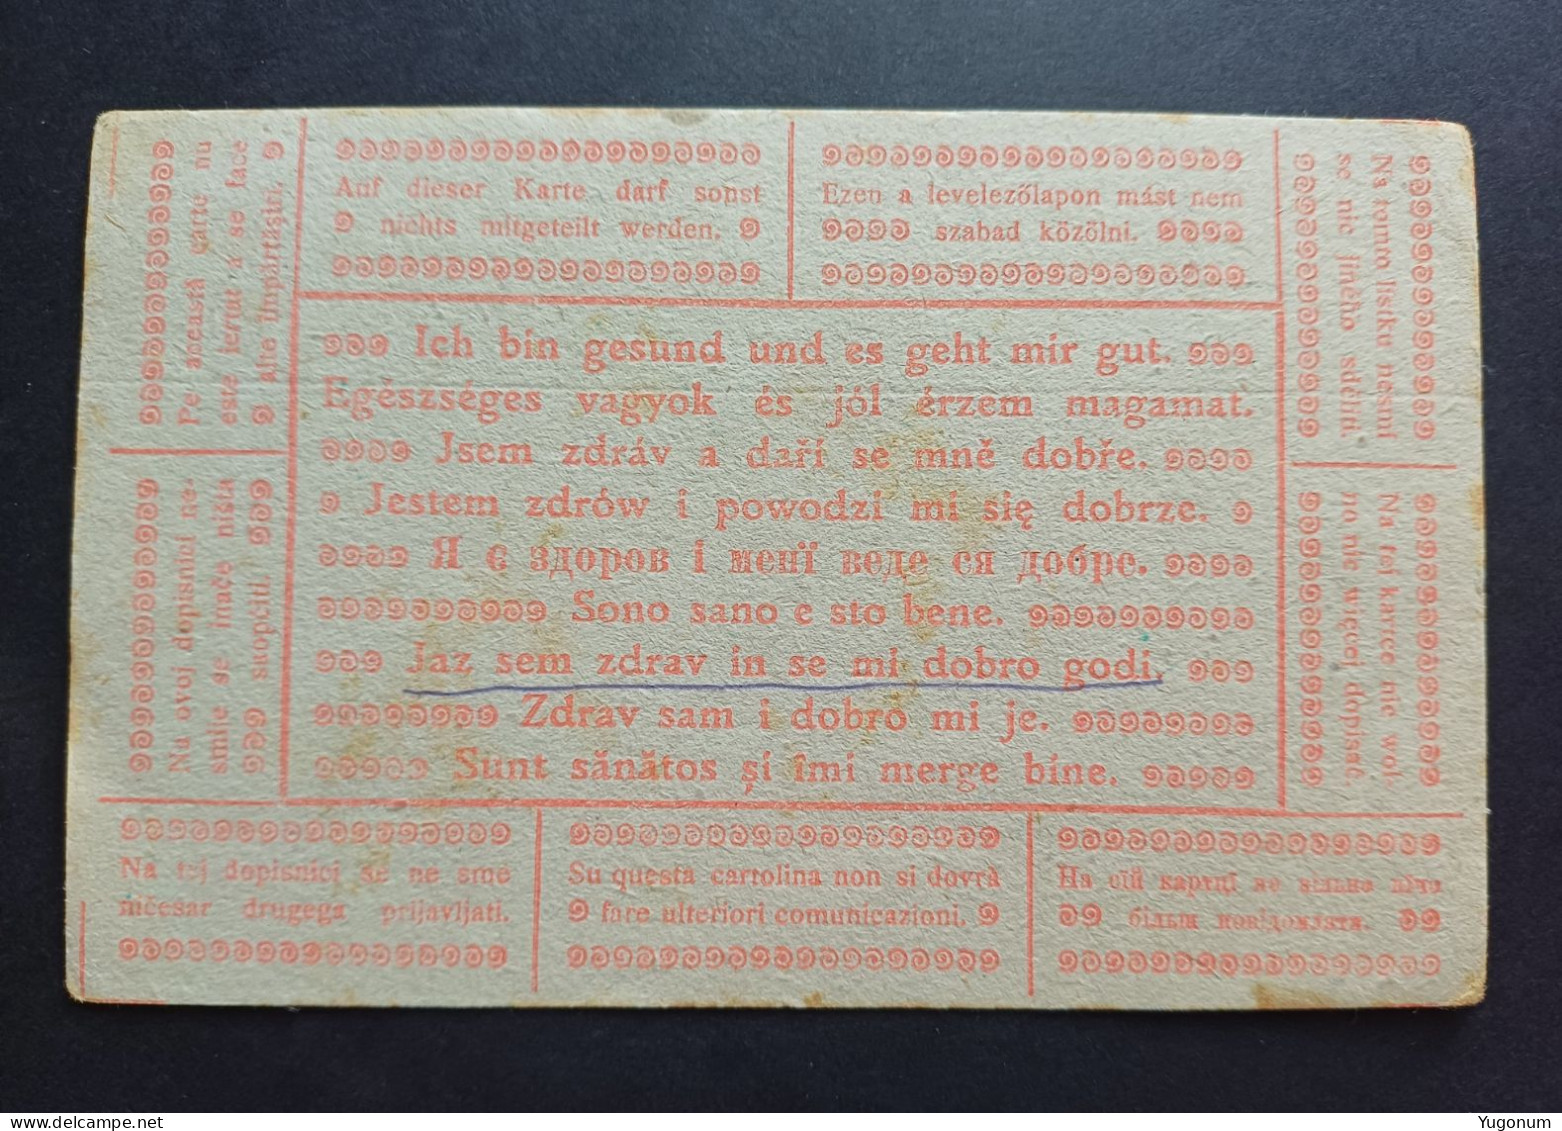 Yugoslavia, Slovenia 1917 Feldpostkarte , Sent To Krize Pri Trzicu (No 3055) - Voorfilatelie